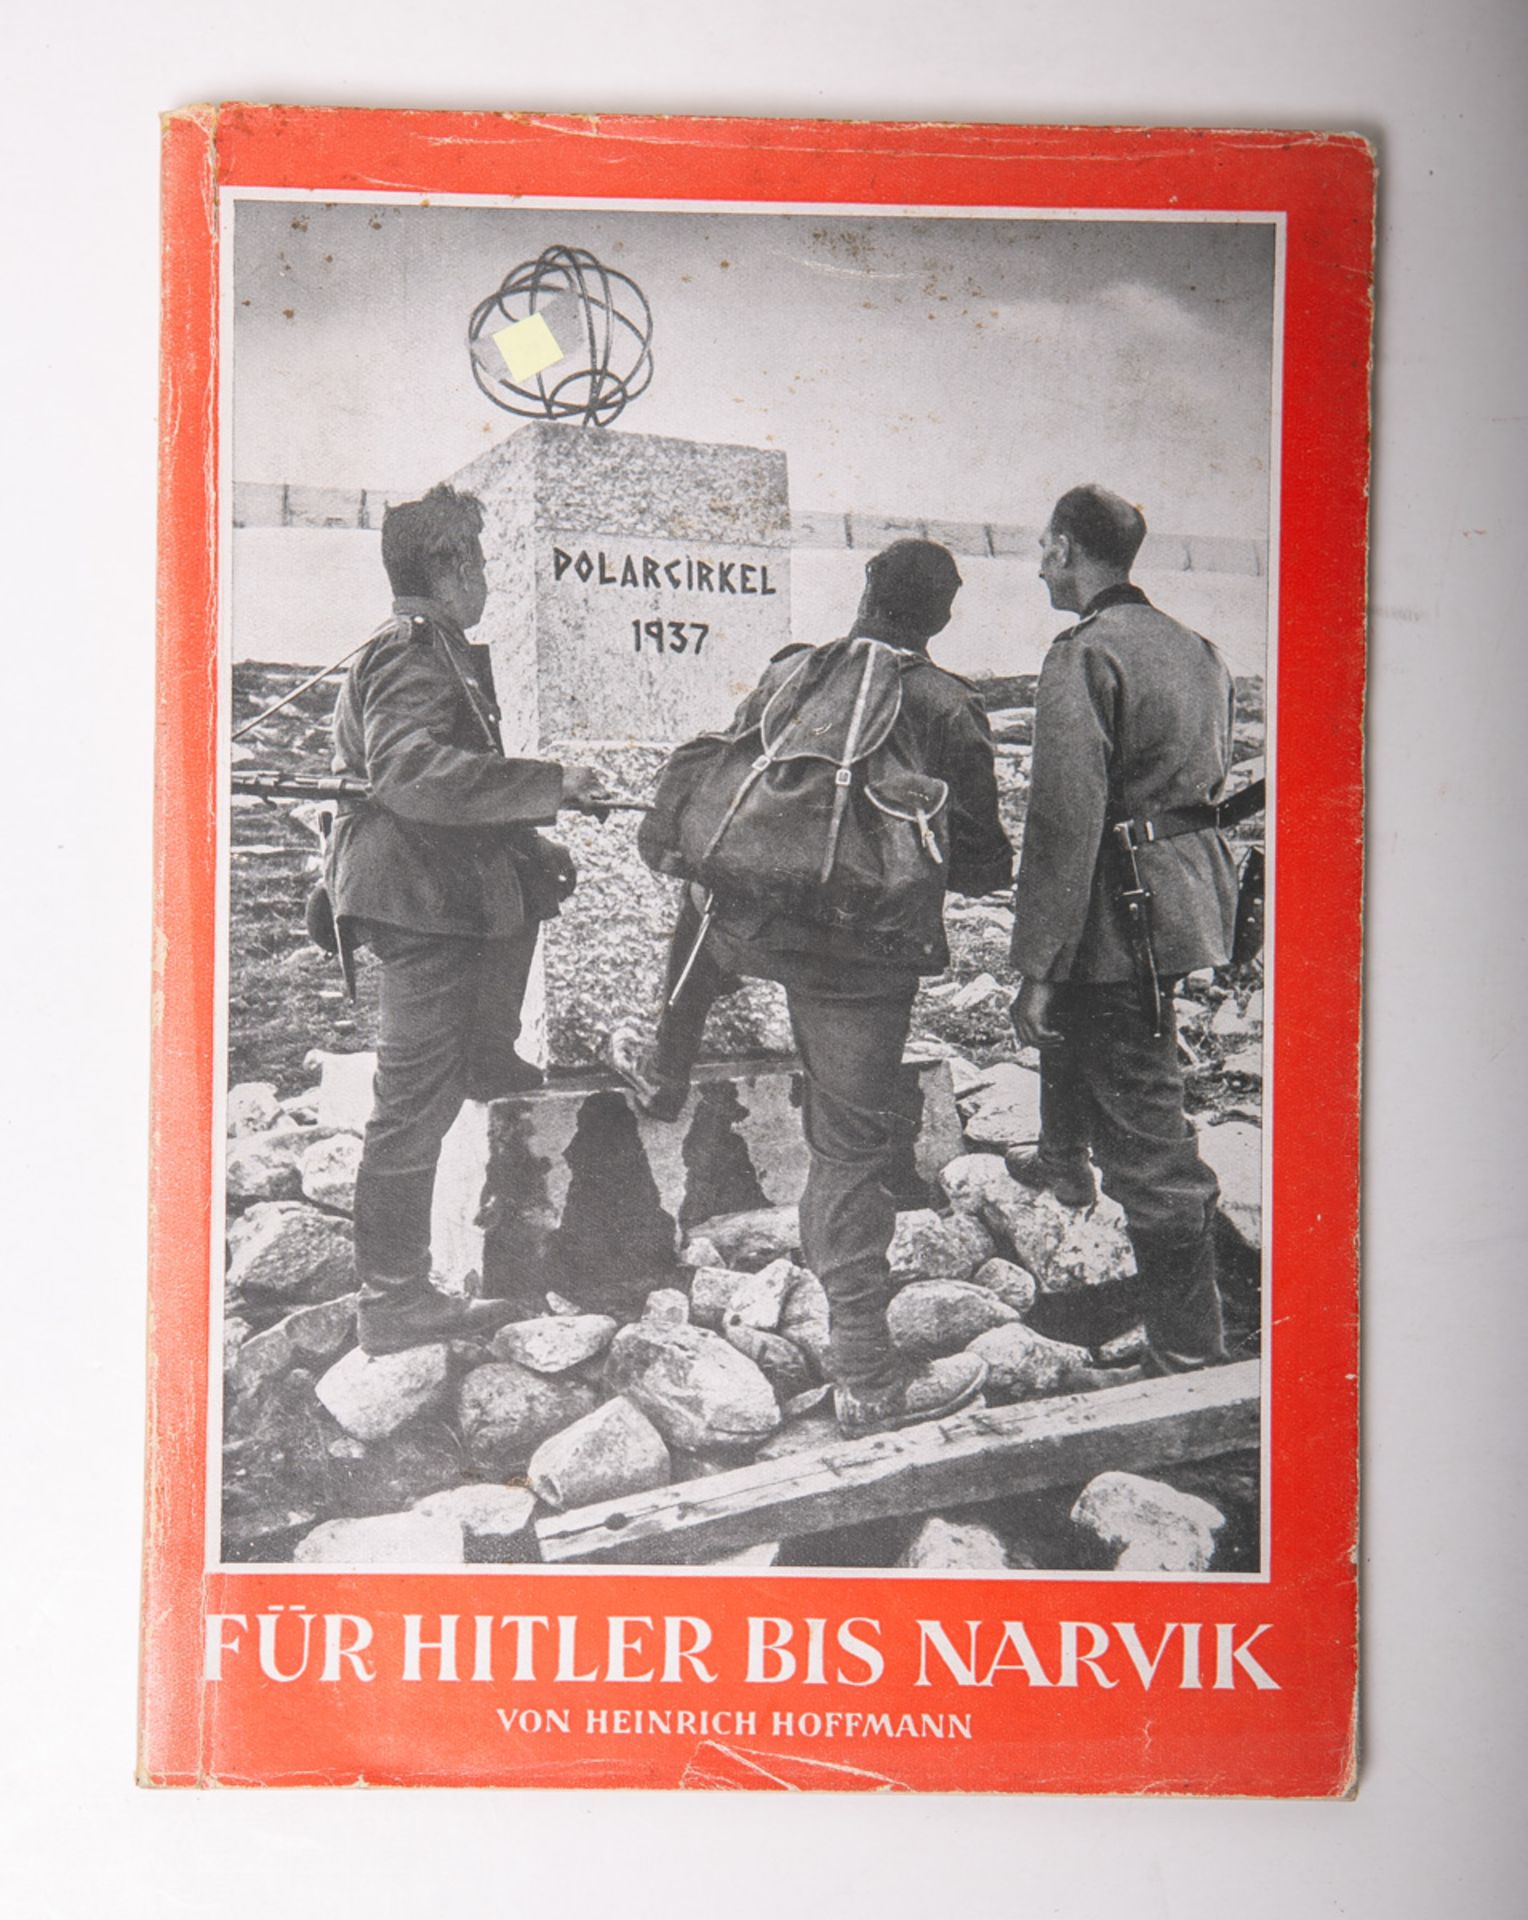 Hoffmann, Heinrich, Prof. (Hrsg.), "Für Hitler bis Narvik"